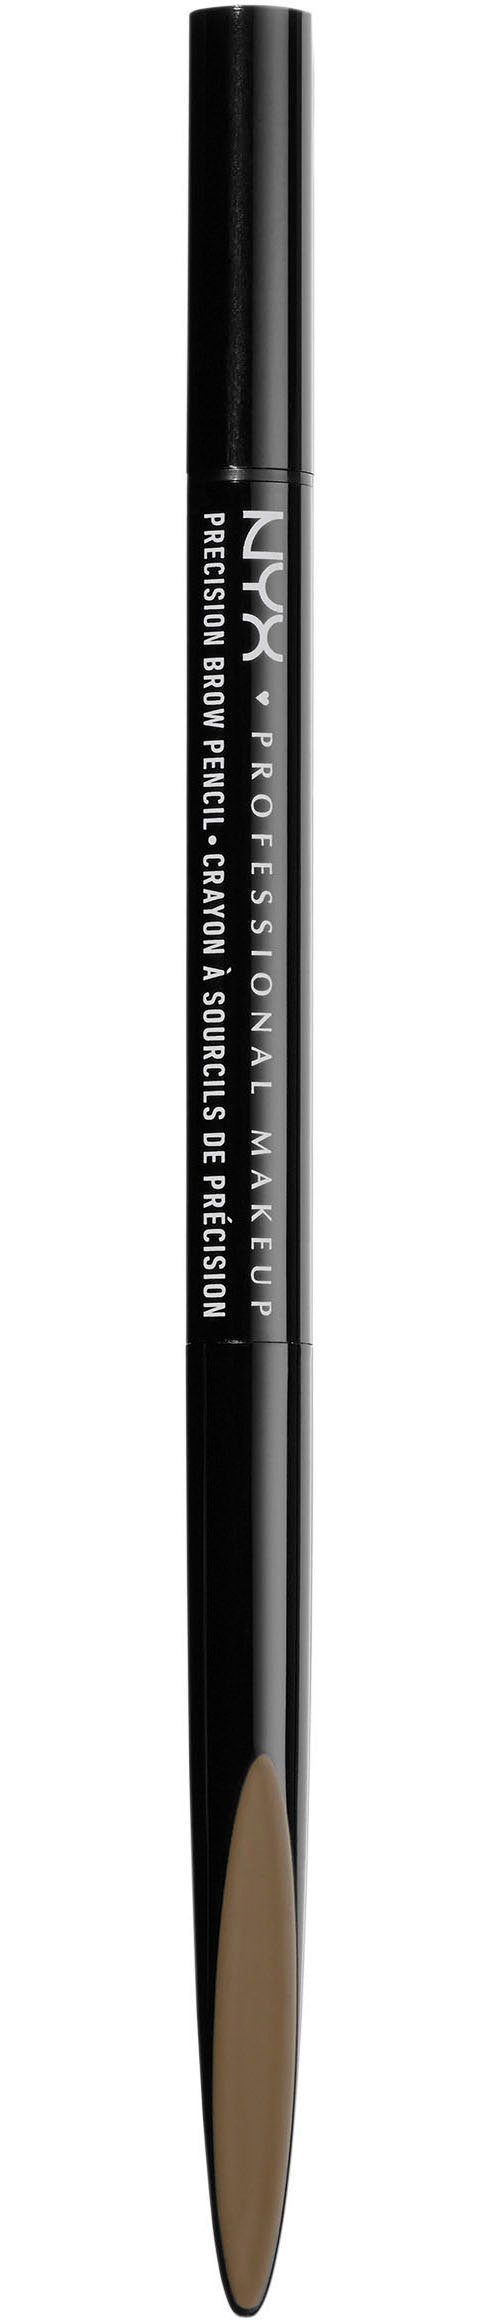 NYX Augenbrauen-Stift Professional Makeup Precision Brow Pencil espresso